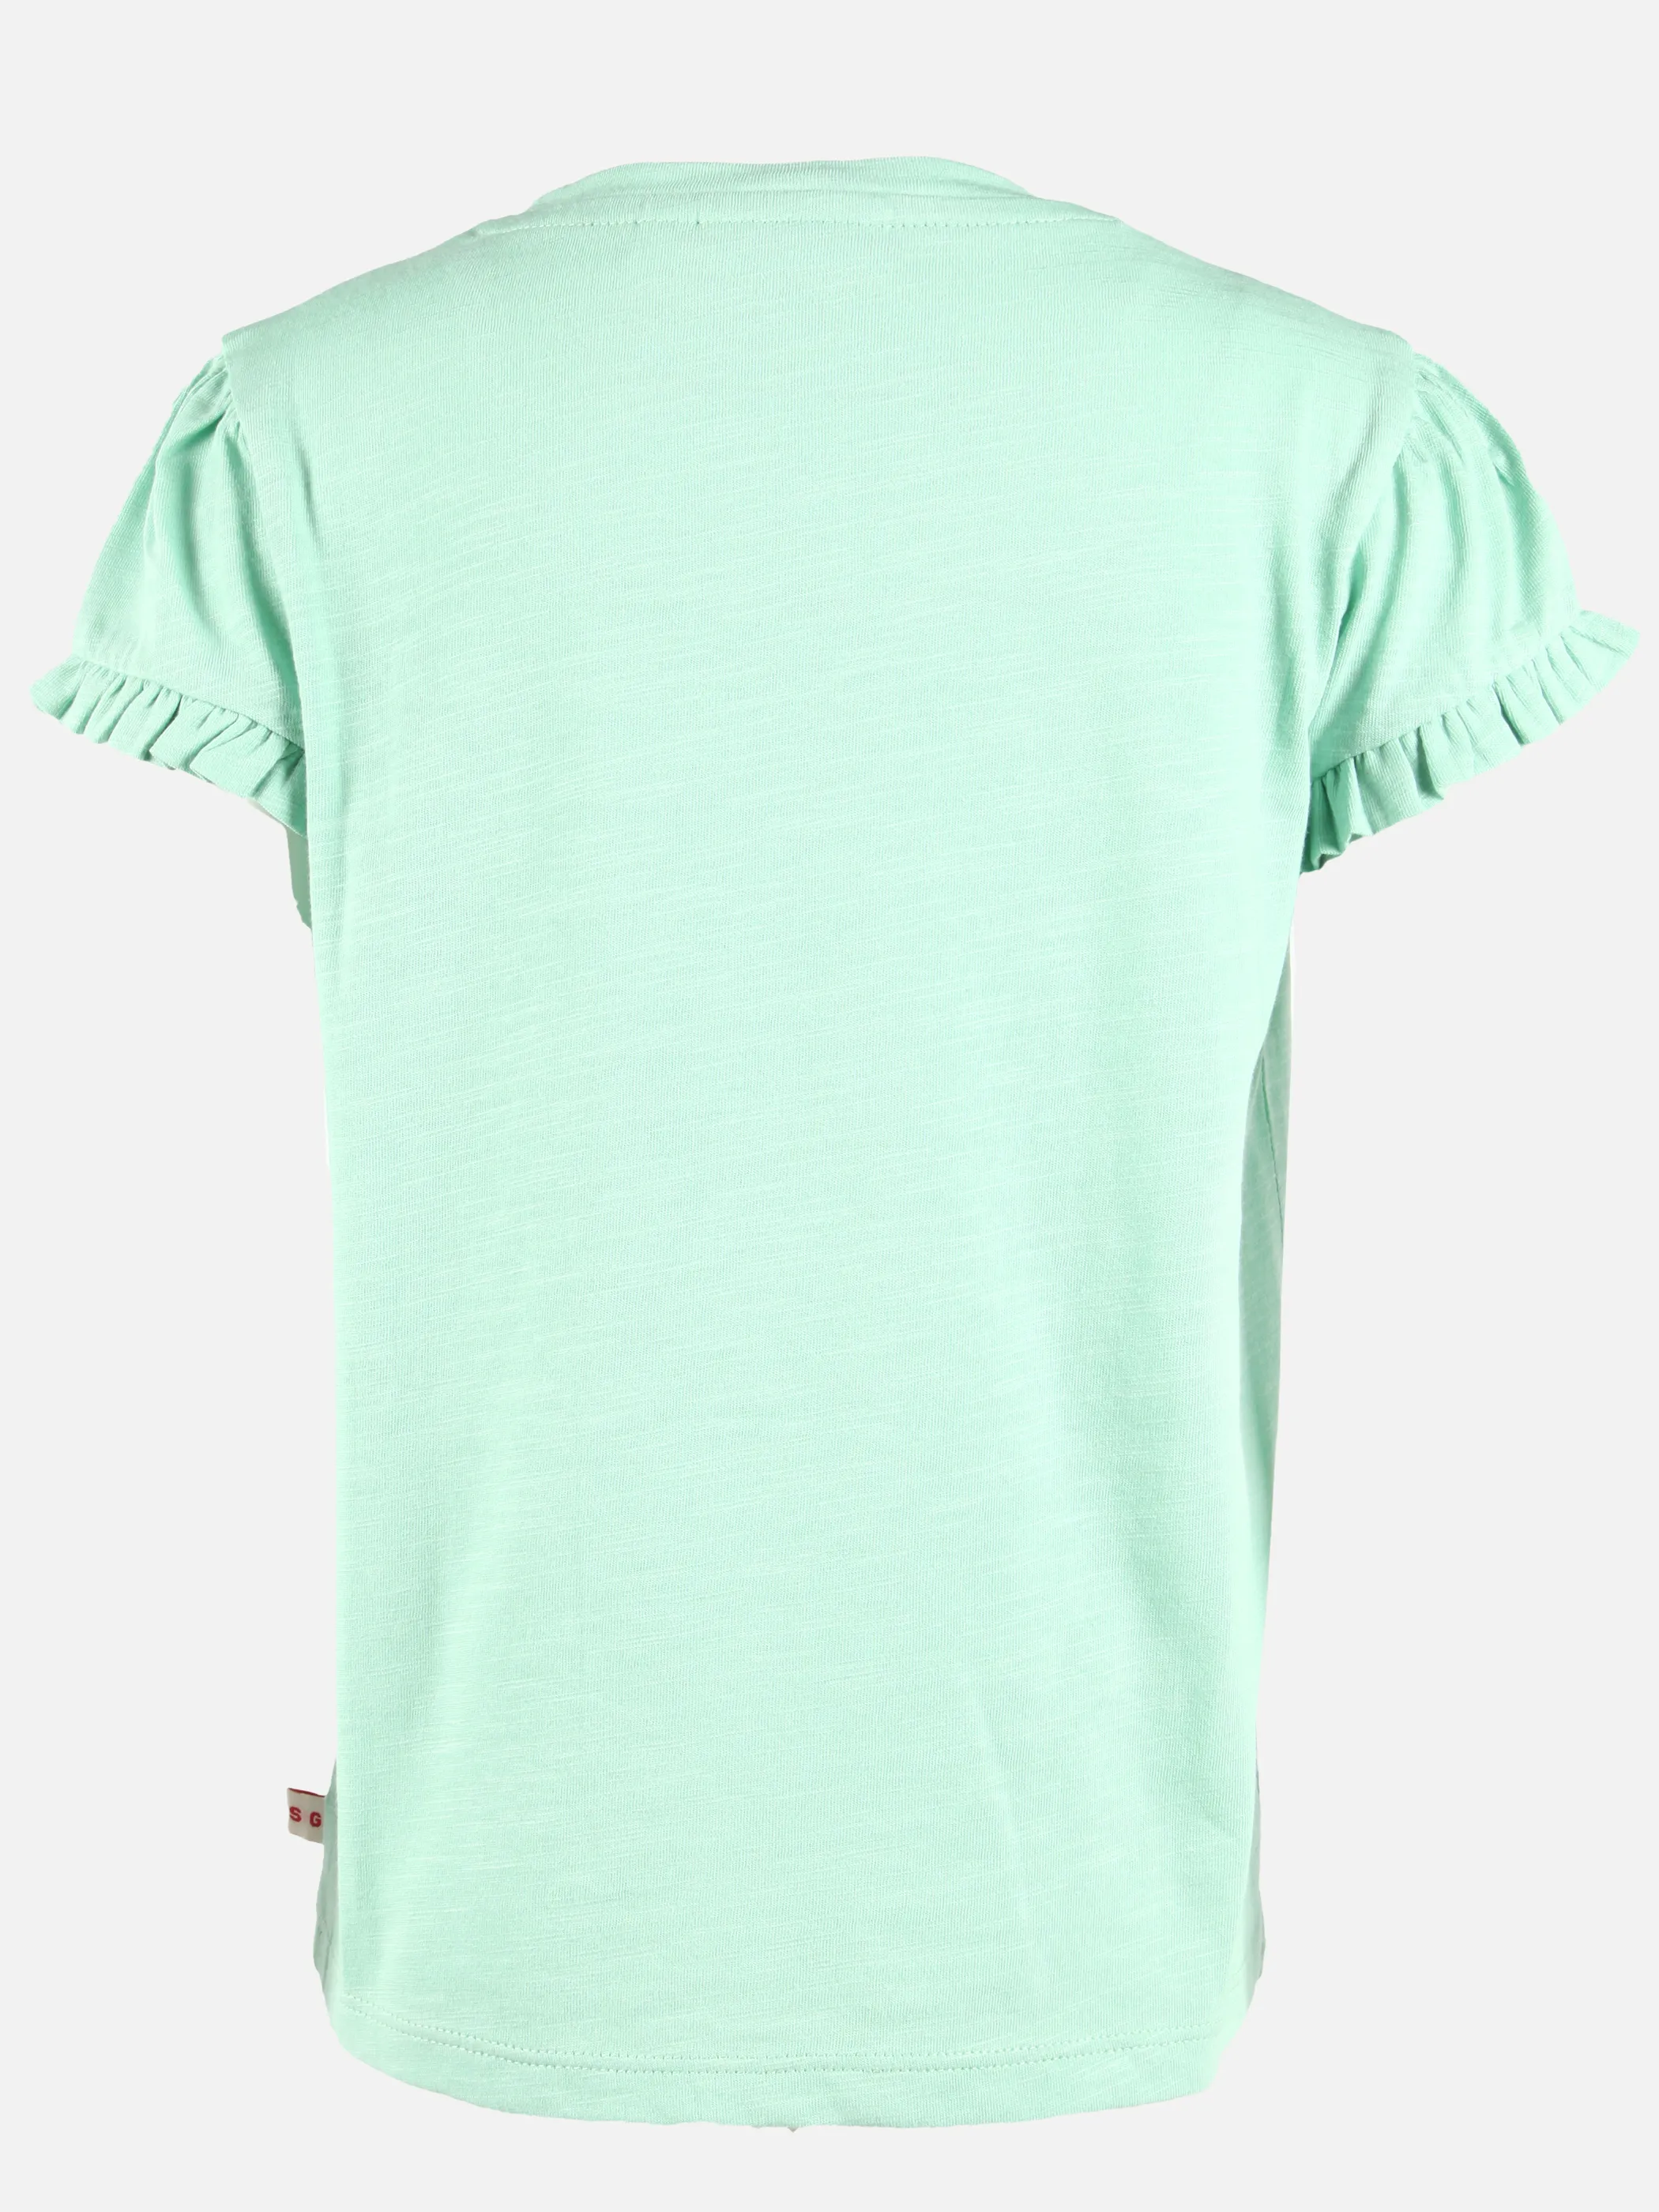 Stop + Go KM T-shirt mit Appl. + Tasche in grün und offwhite Grün 891563 GRÜN 2